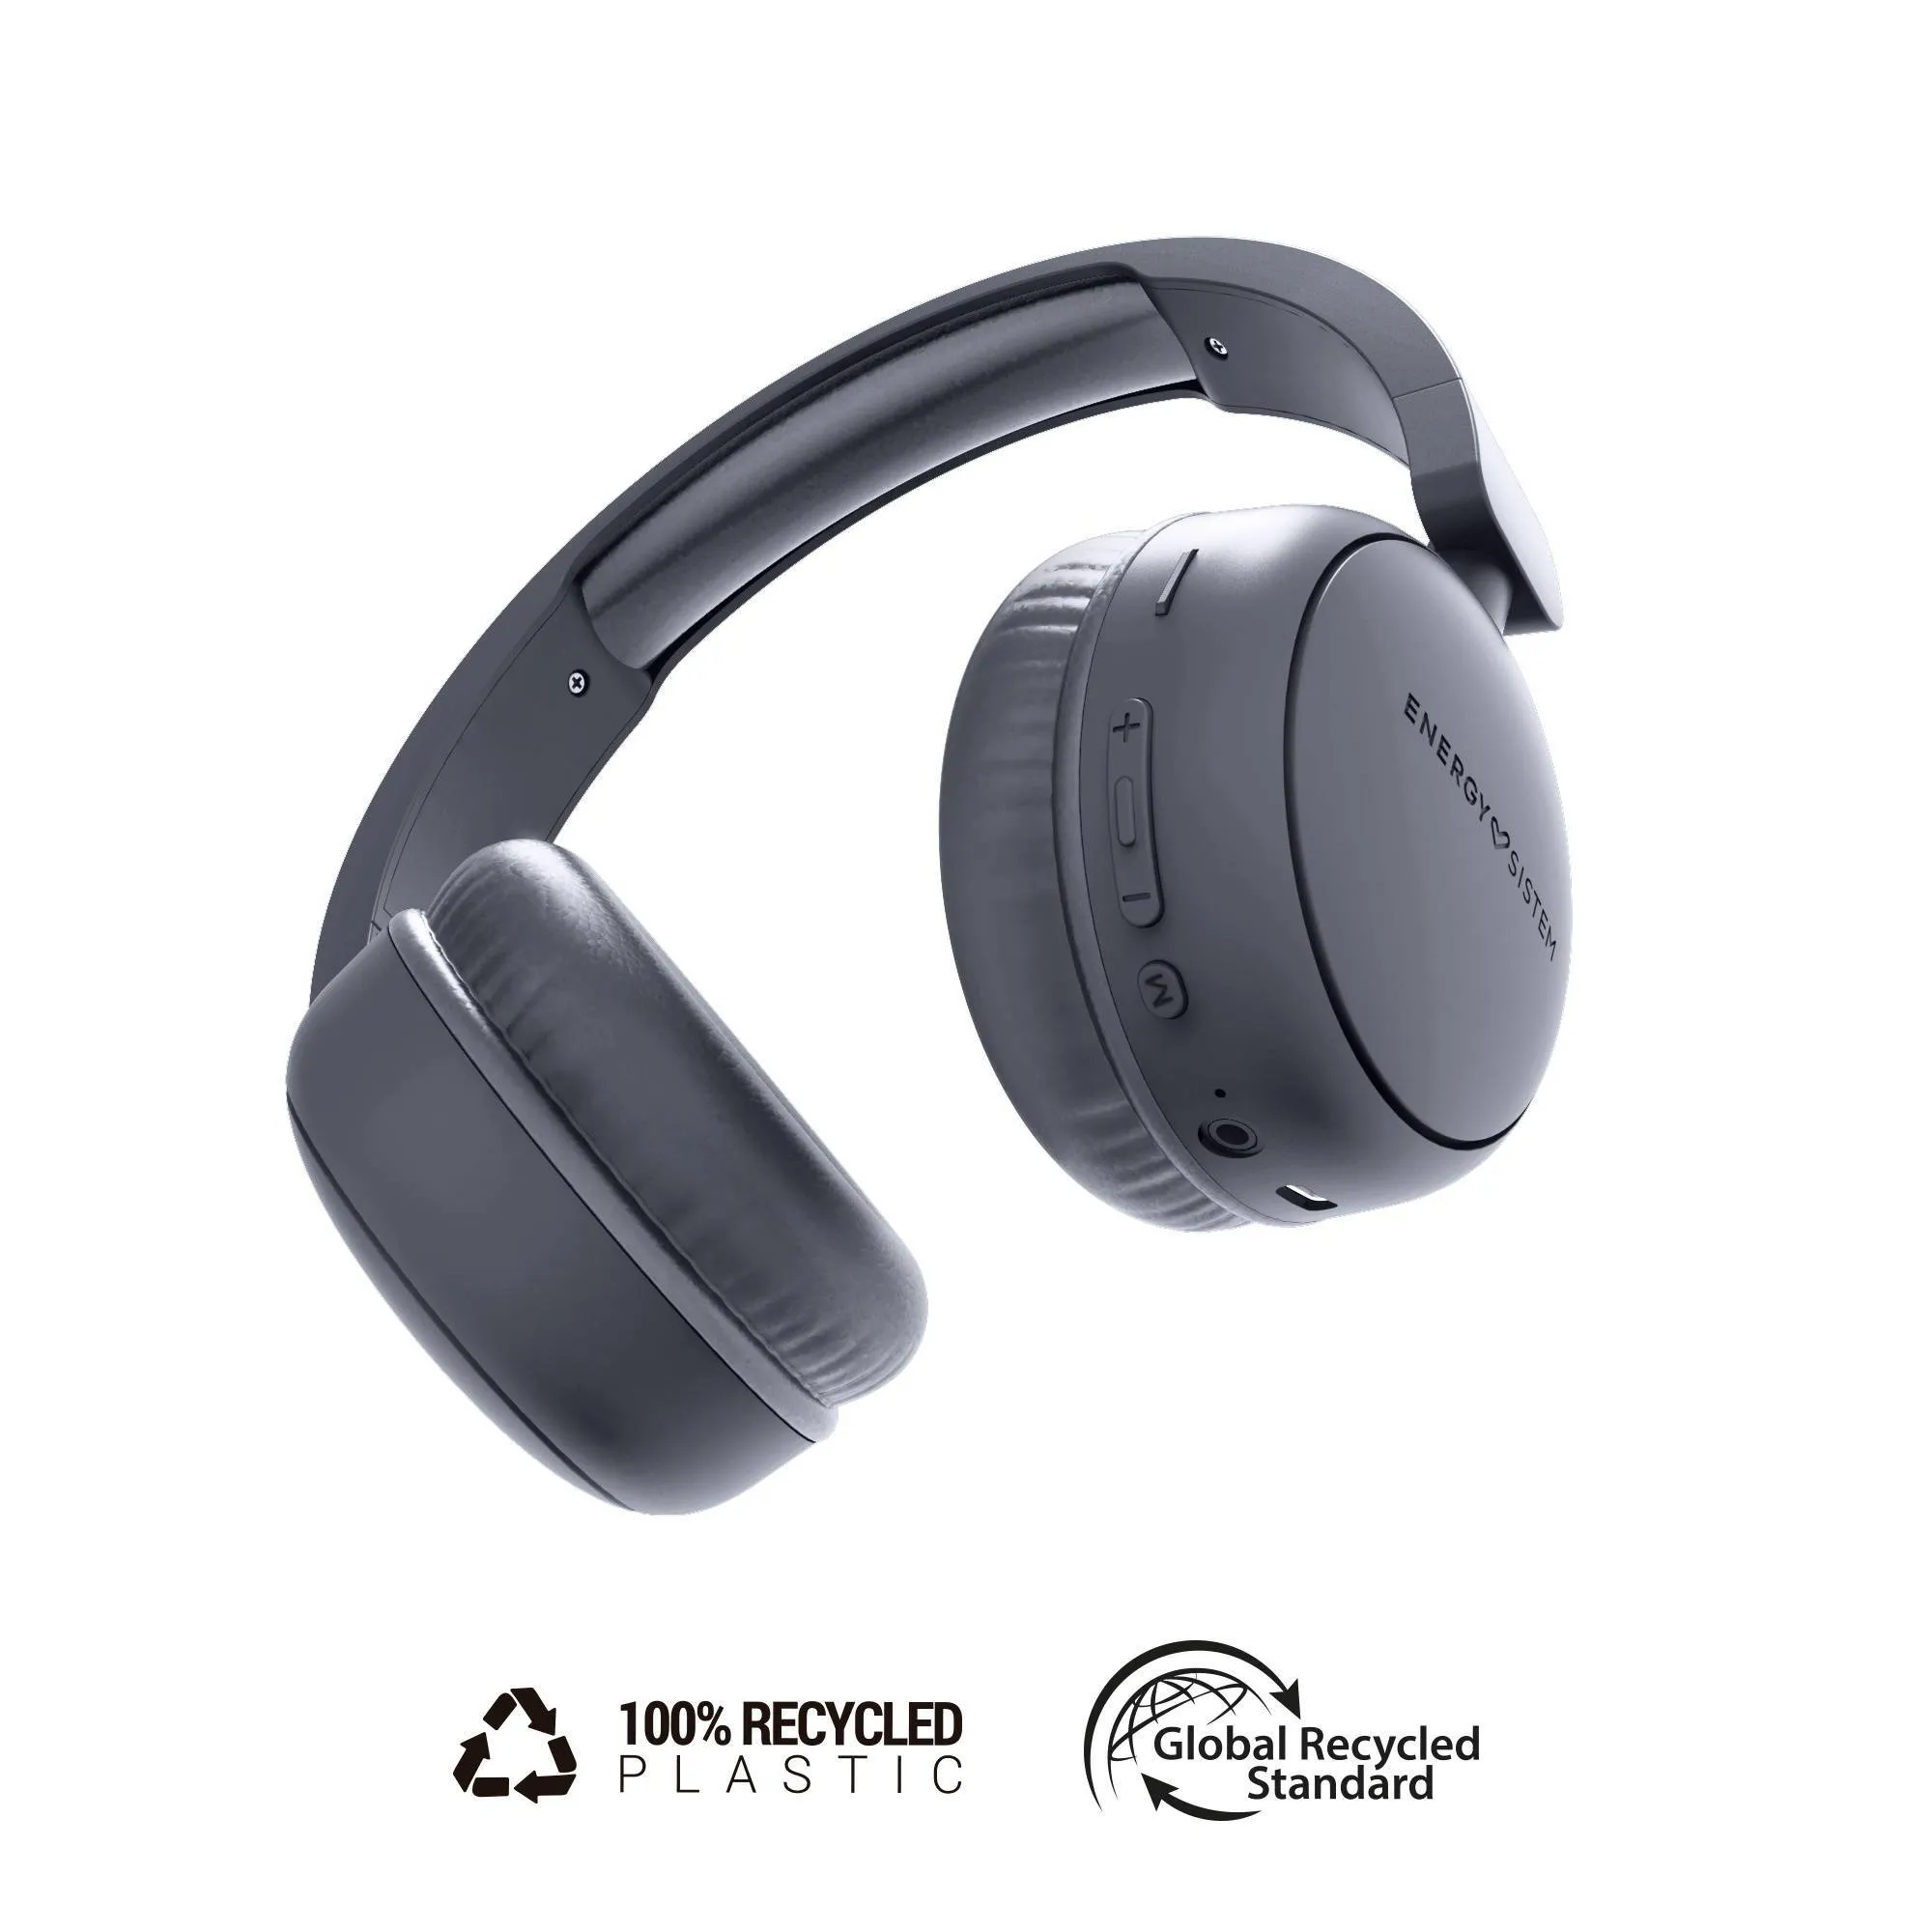 Audífonos Bluetooth HeadTuner fabricados con plástico 100% reciclado y hasta 16h de autonomía